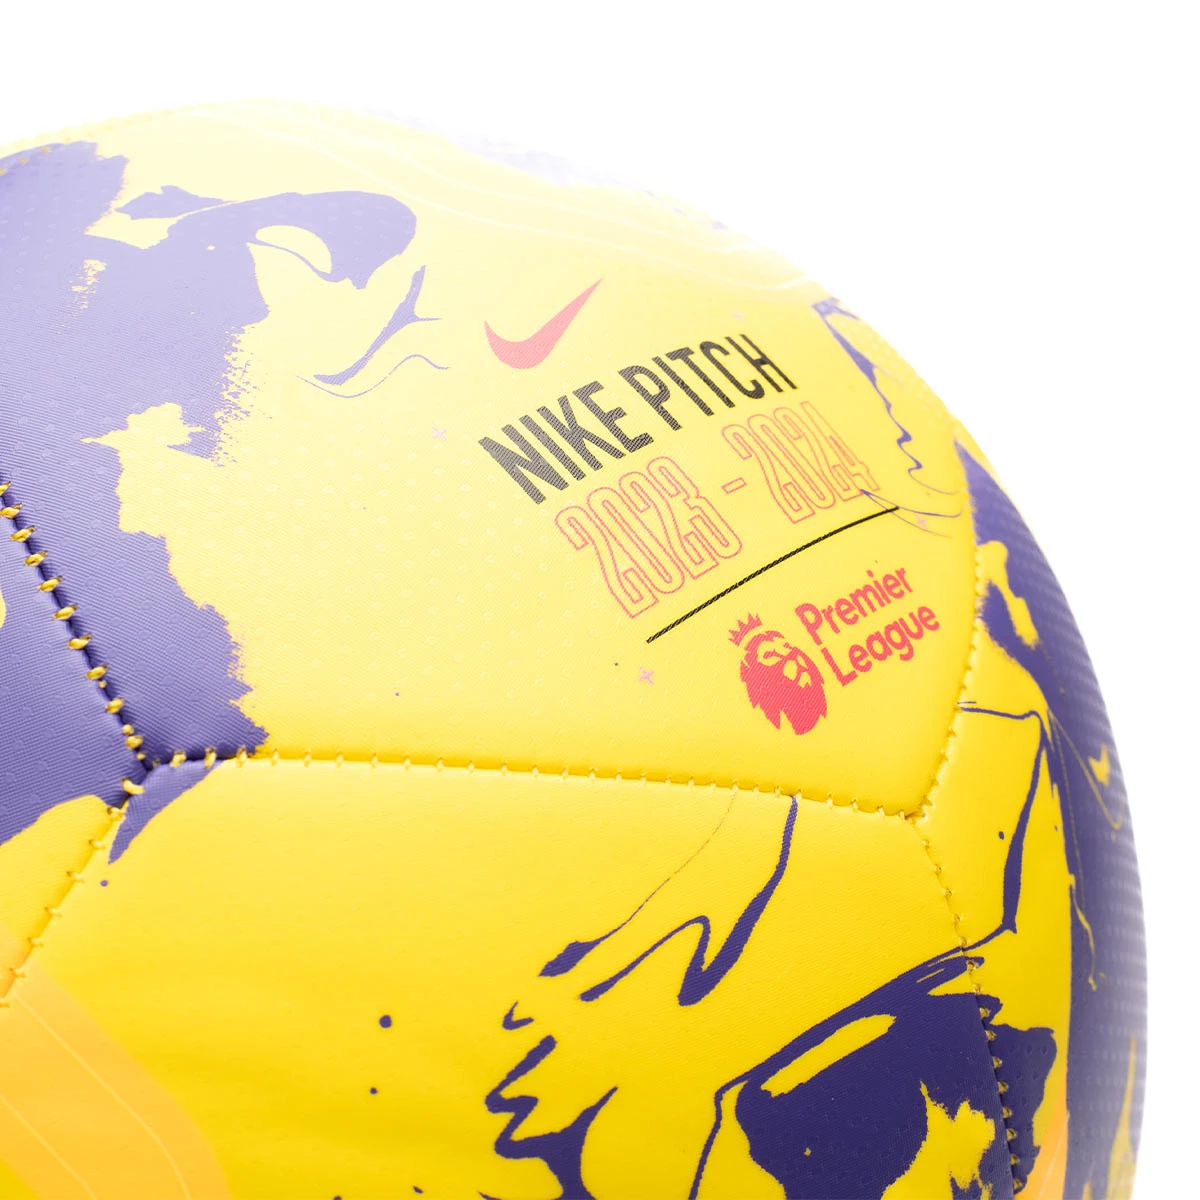 Balón de fútbol 11 Premier League 2023/2024 Pitch para Unisex